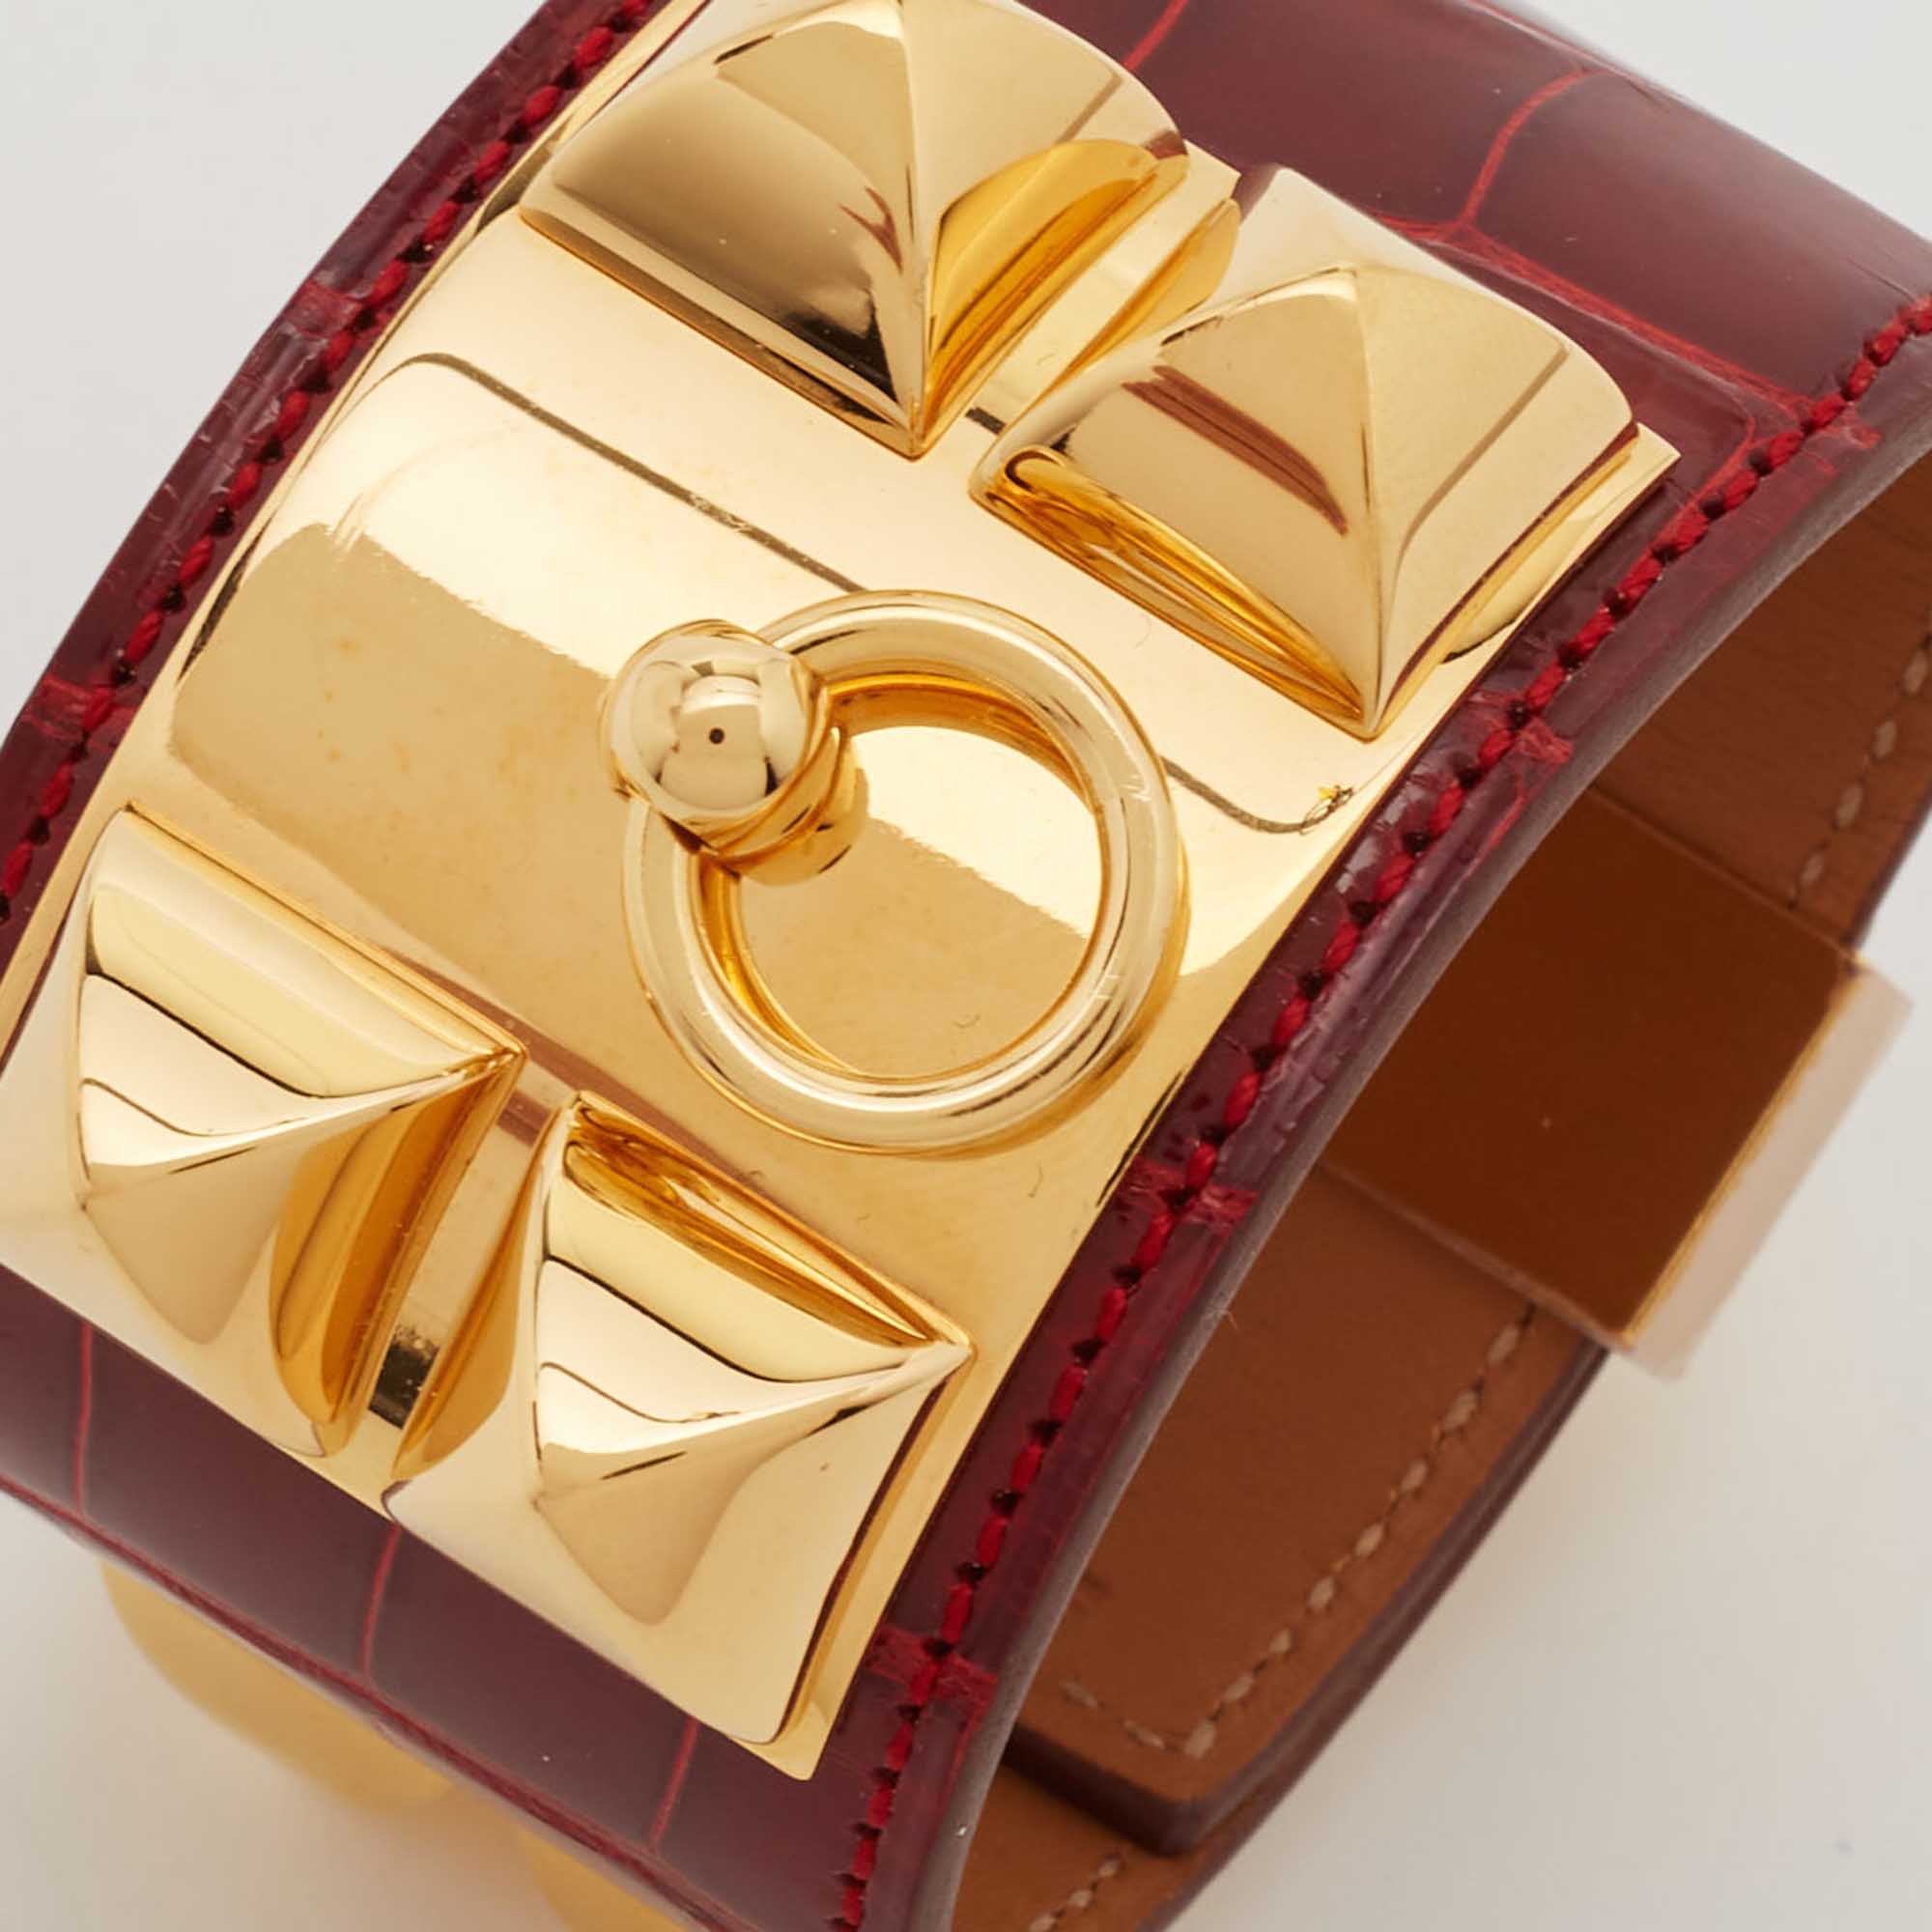 

Hermès Collier de Chien Alligator Leather Gold Plated Bracelet